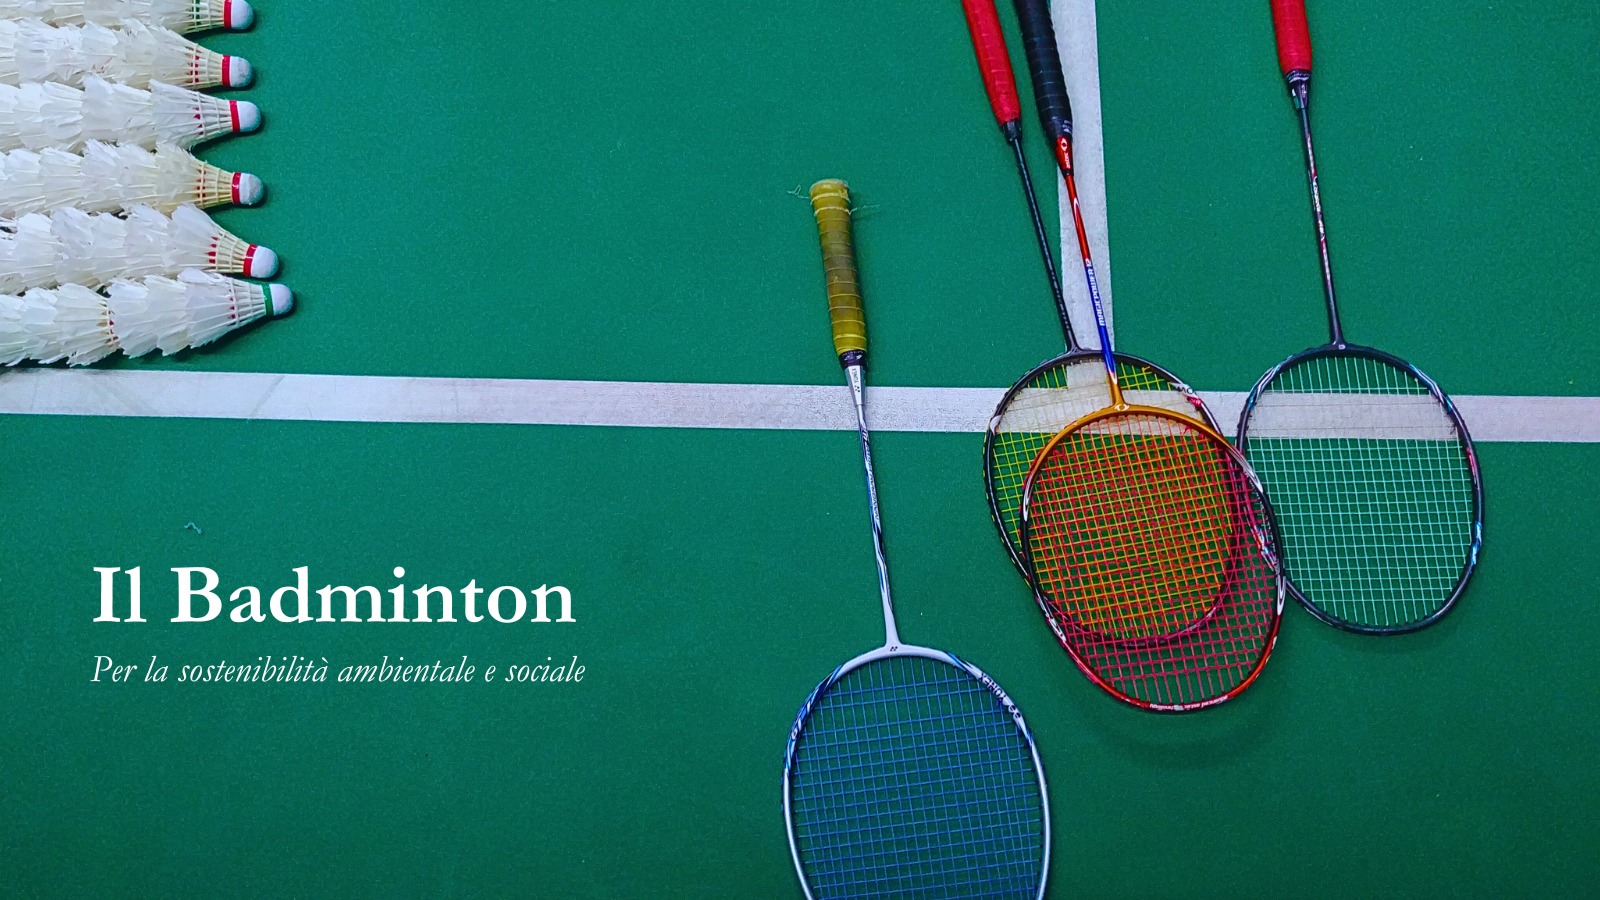 Il Badminton per la sostenibilità ambientale e sociale